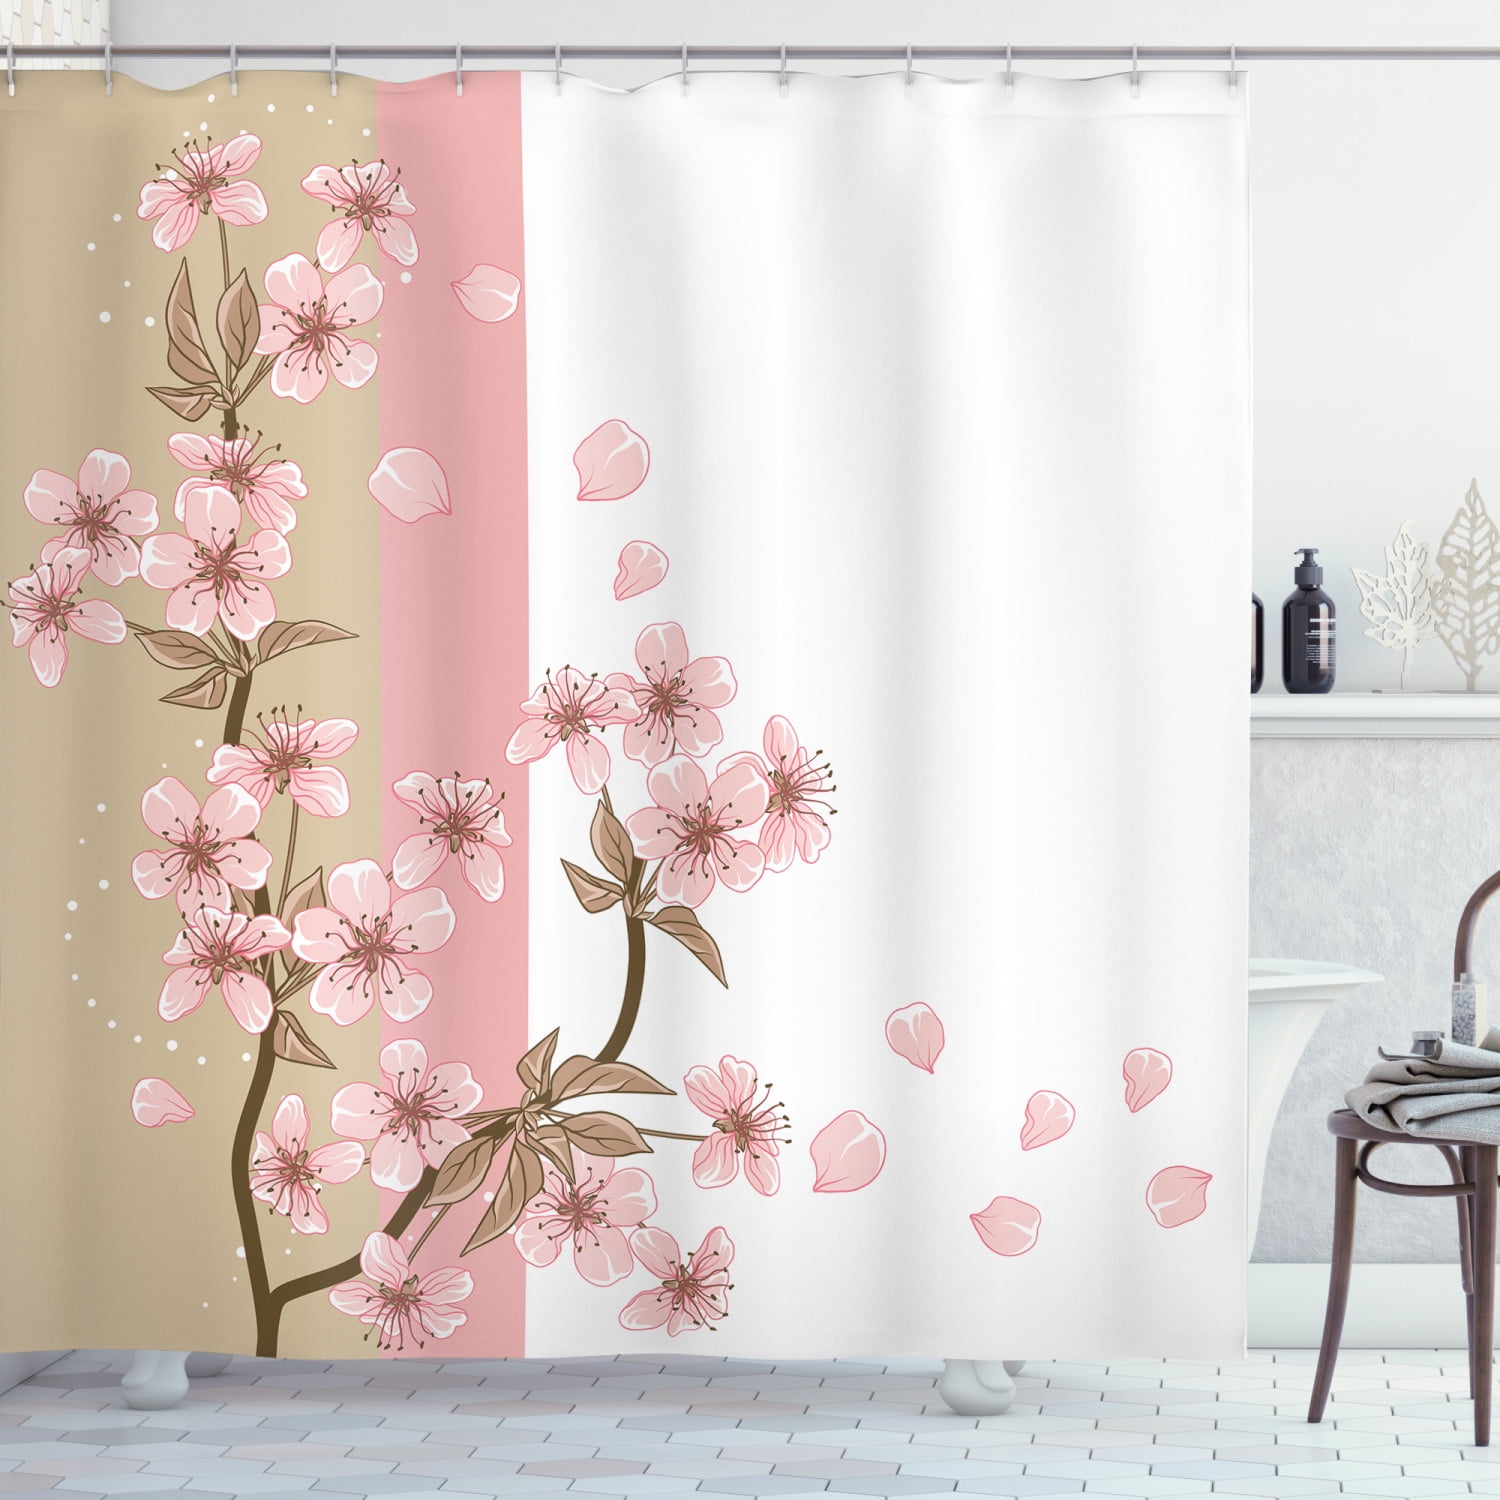 Lake Sakura Retro Japanese Shrine Bathroom Decor Shower Curtain Sets w/ Hooks 